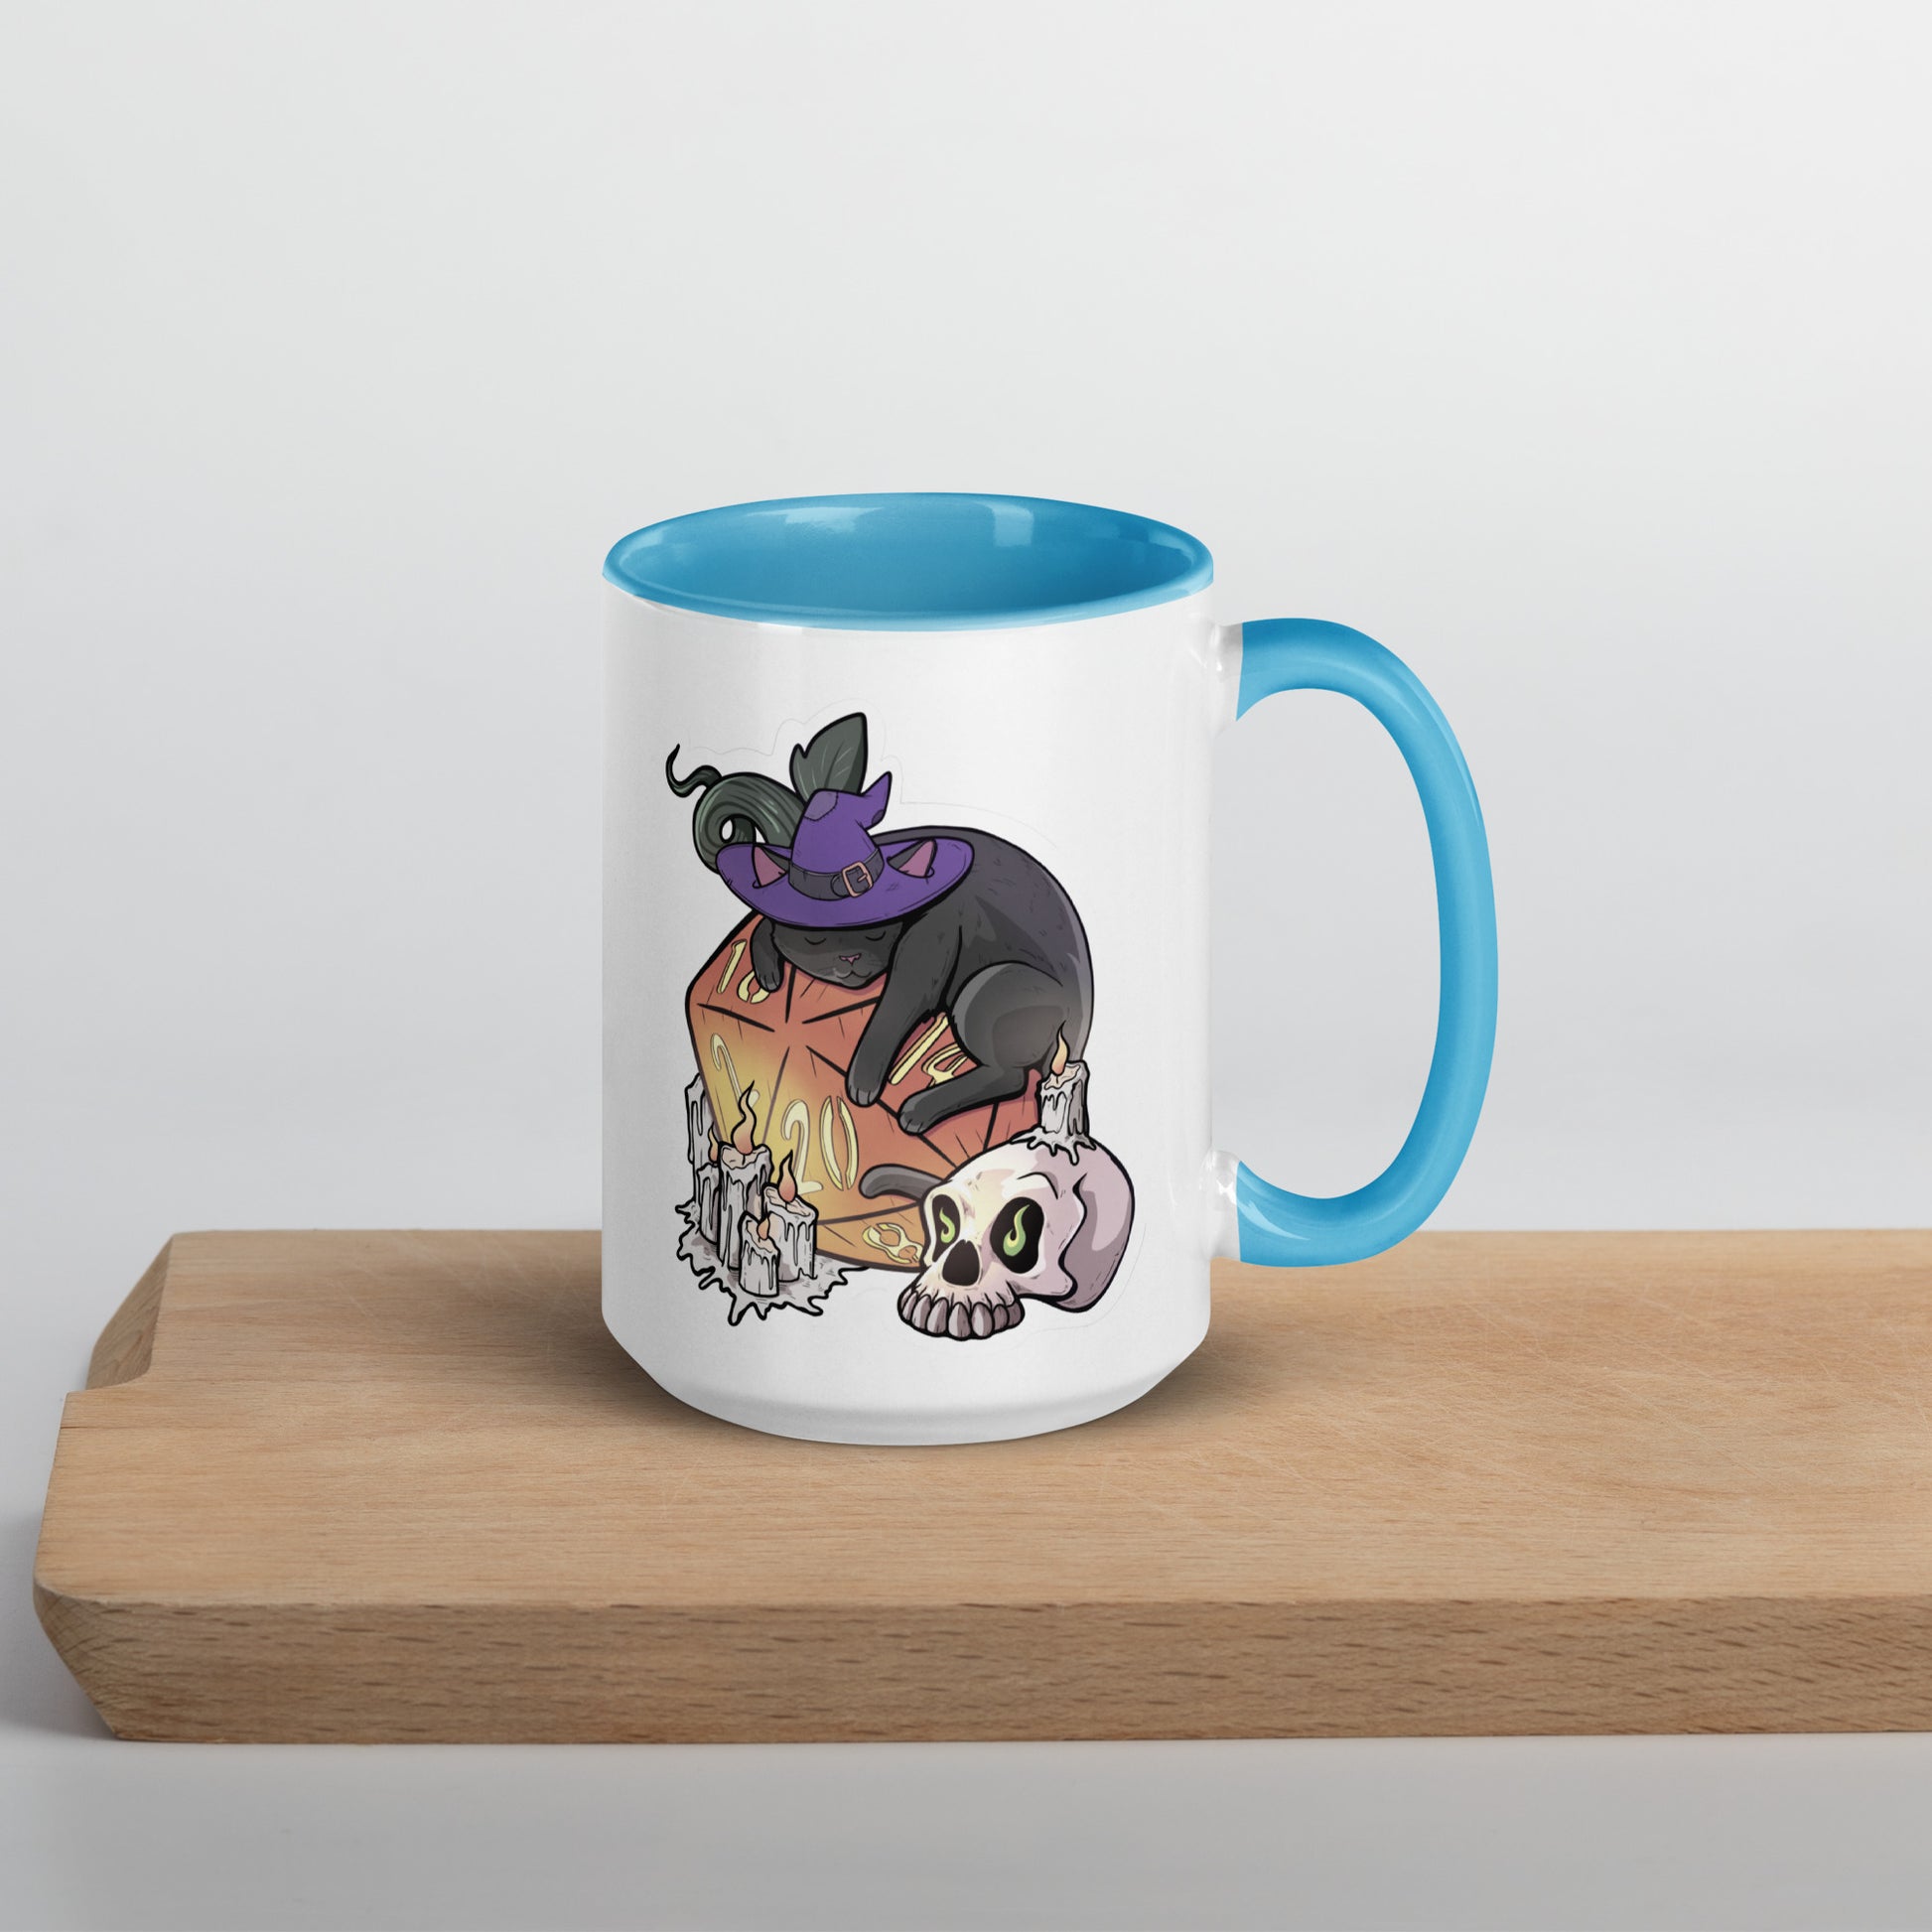 D20 Black Cat Mug with Color Inside  Level 1 Gamers   